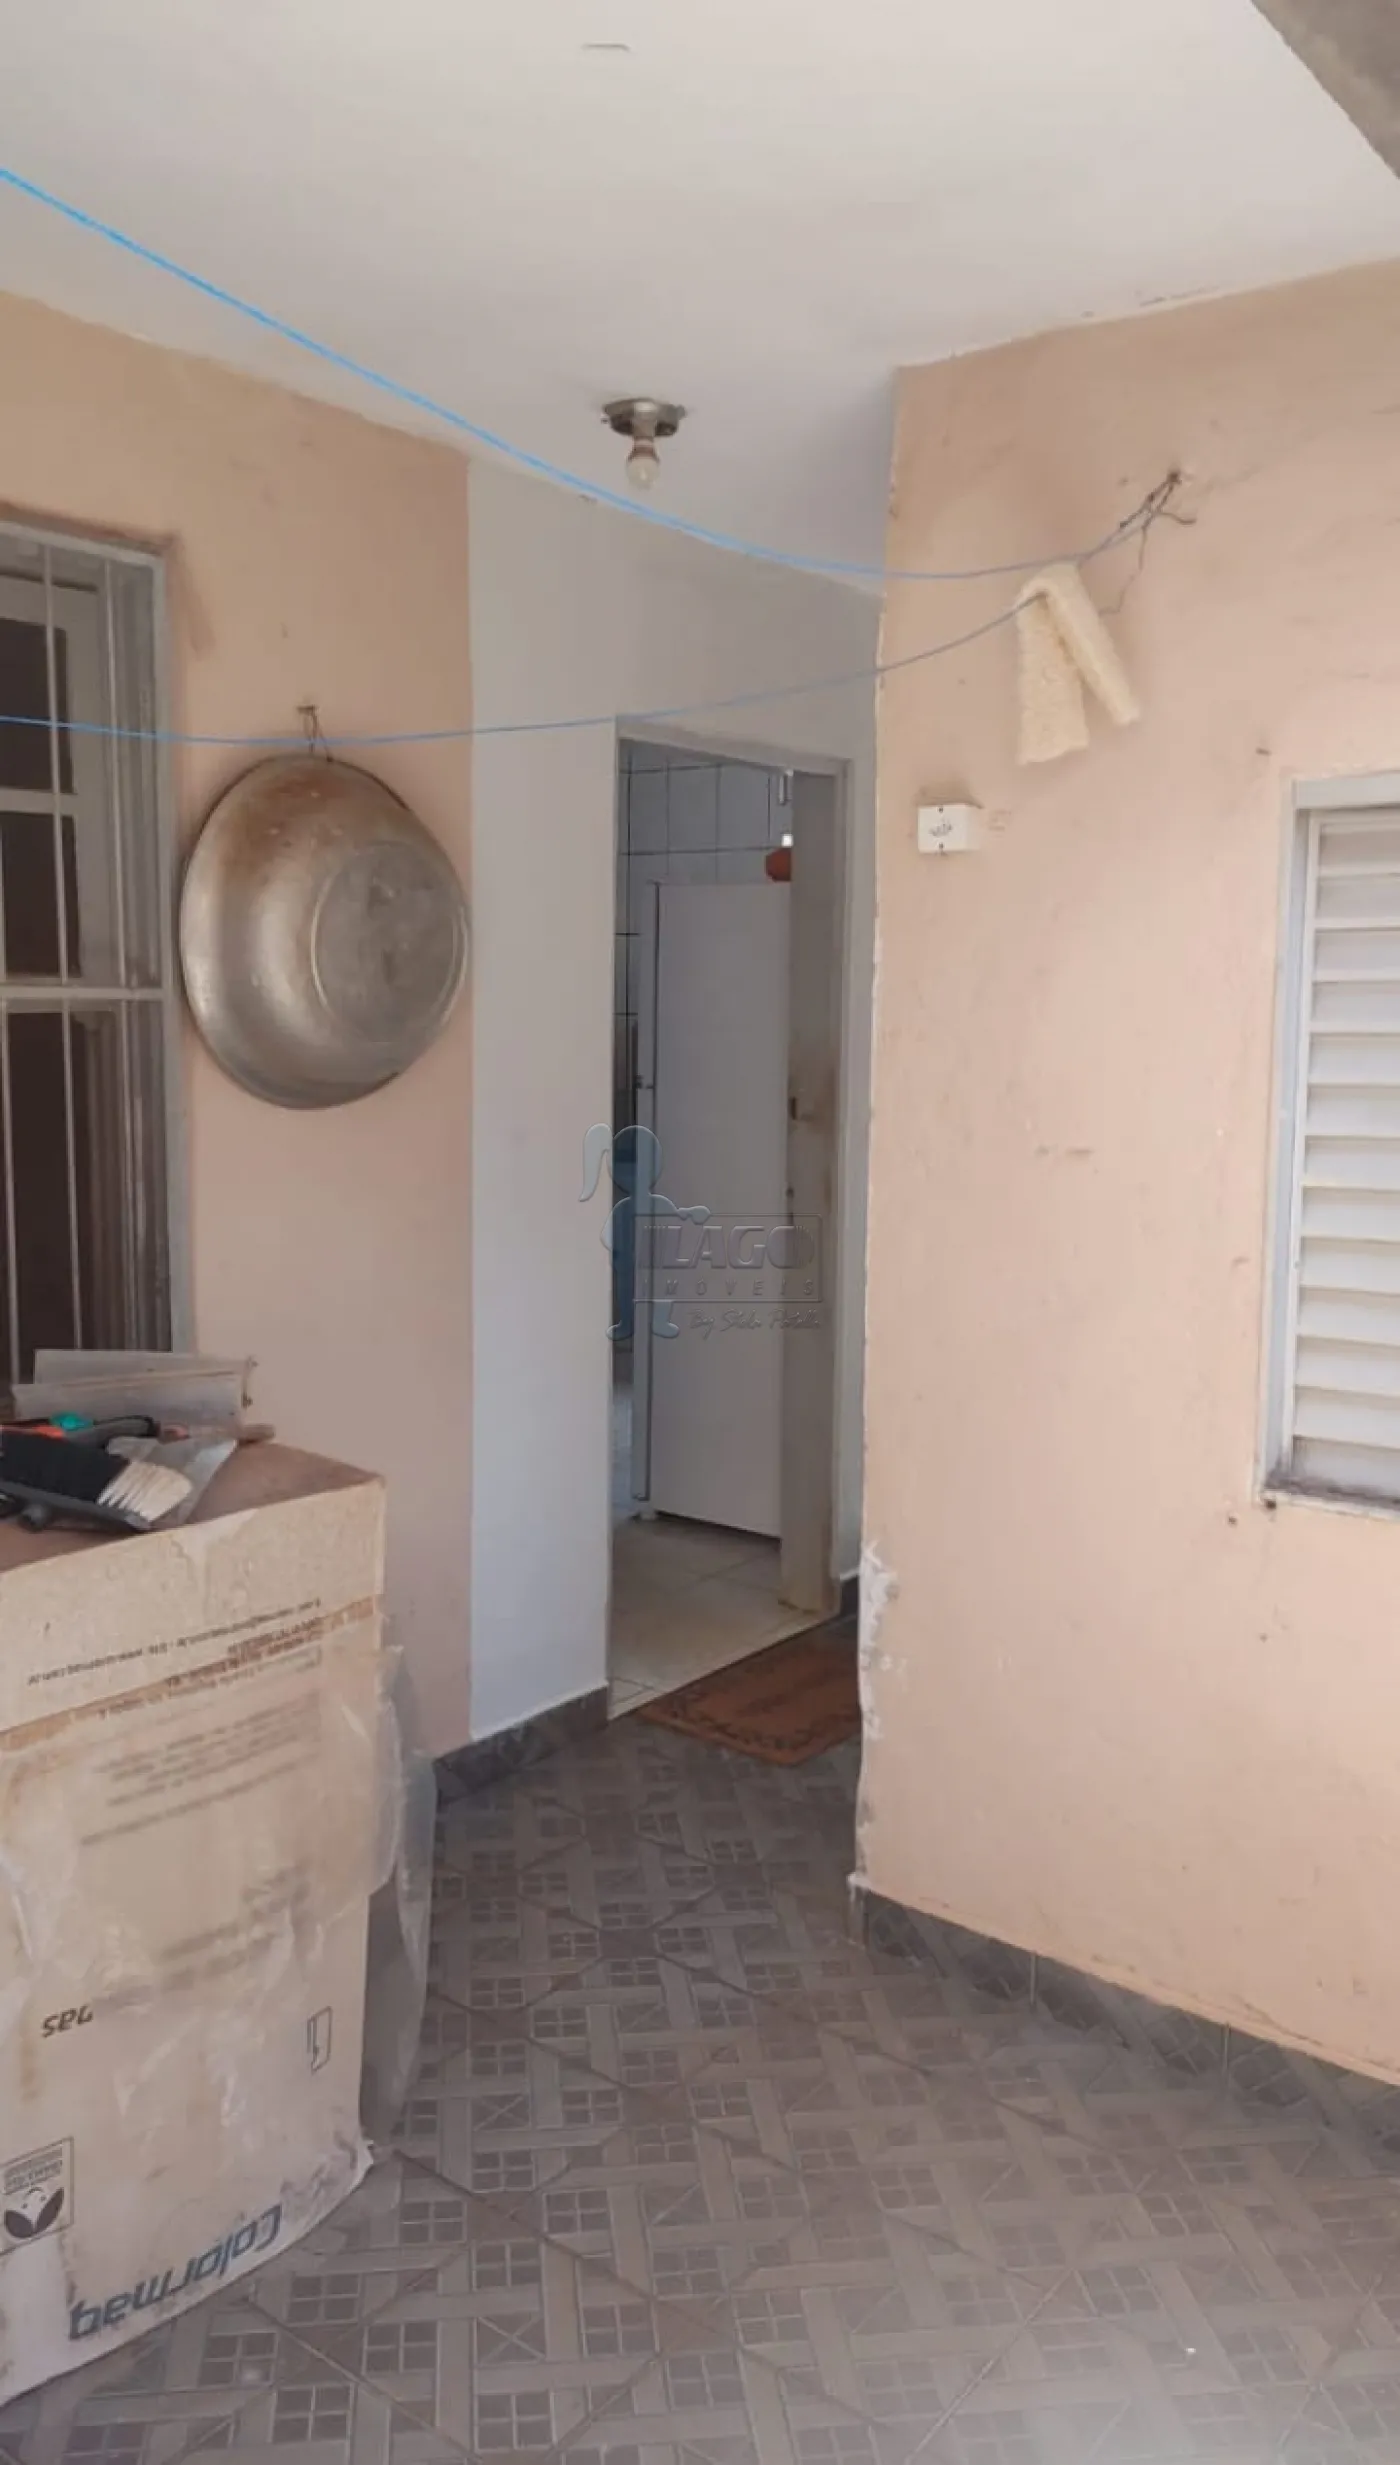 Comprar Casa / Padrão em Ribeirão Preto R$ 490.000,00 - Foto 5